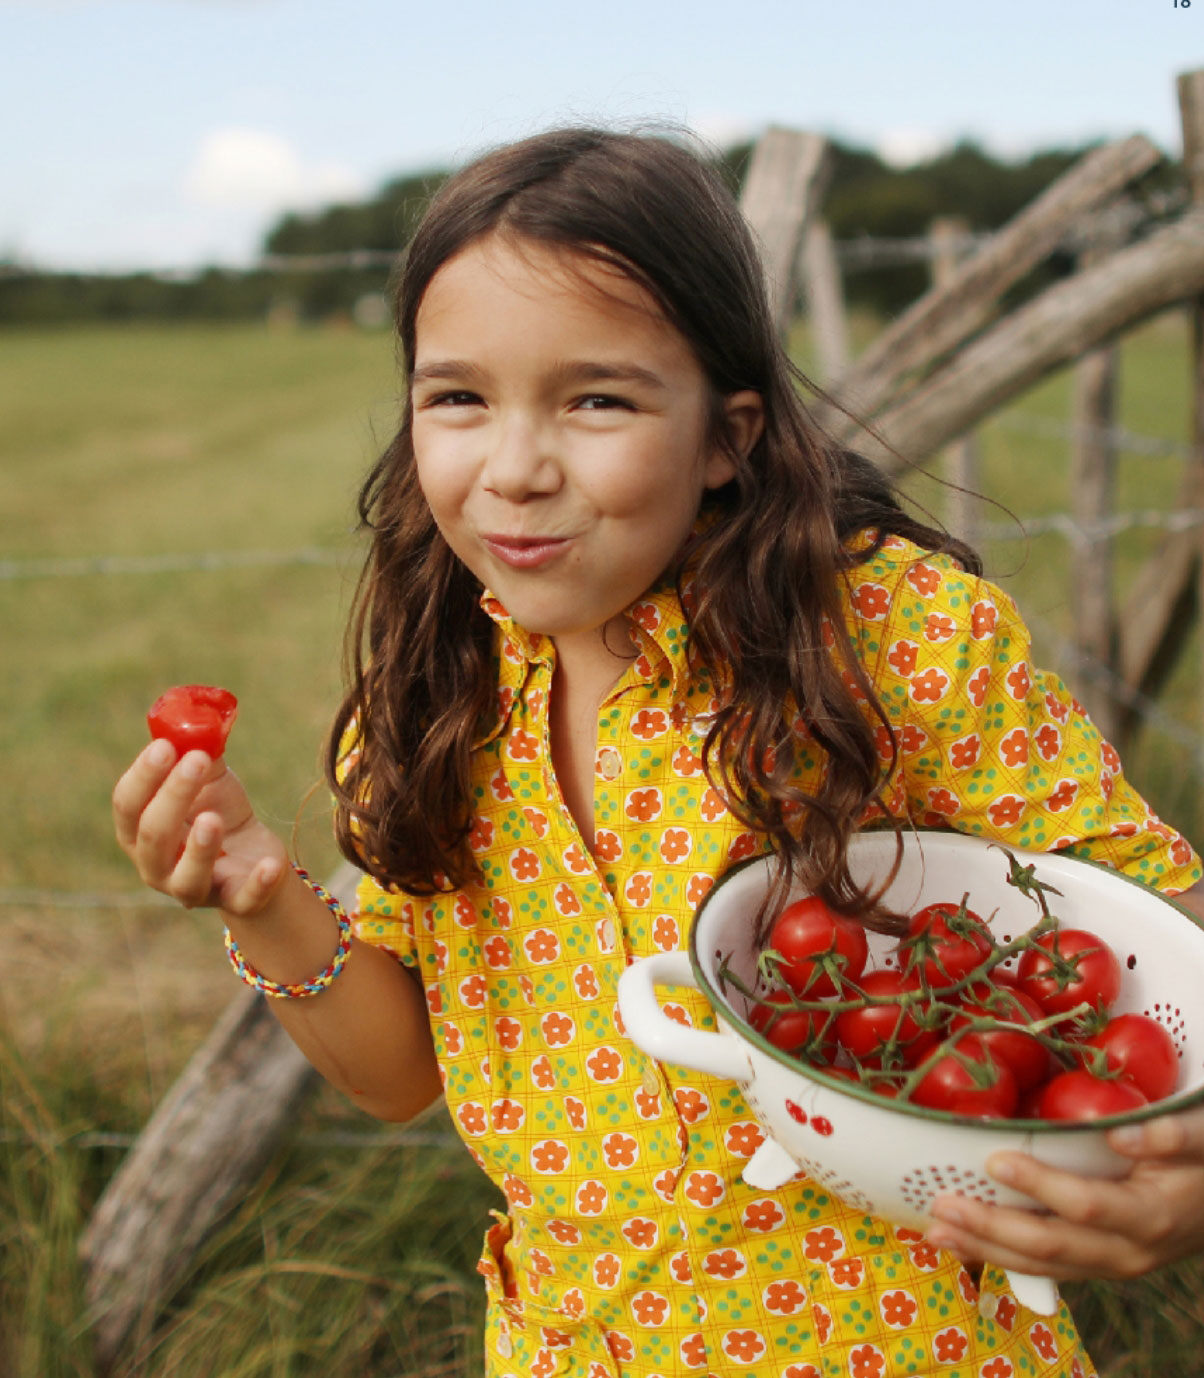 girl eating tomatoes